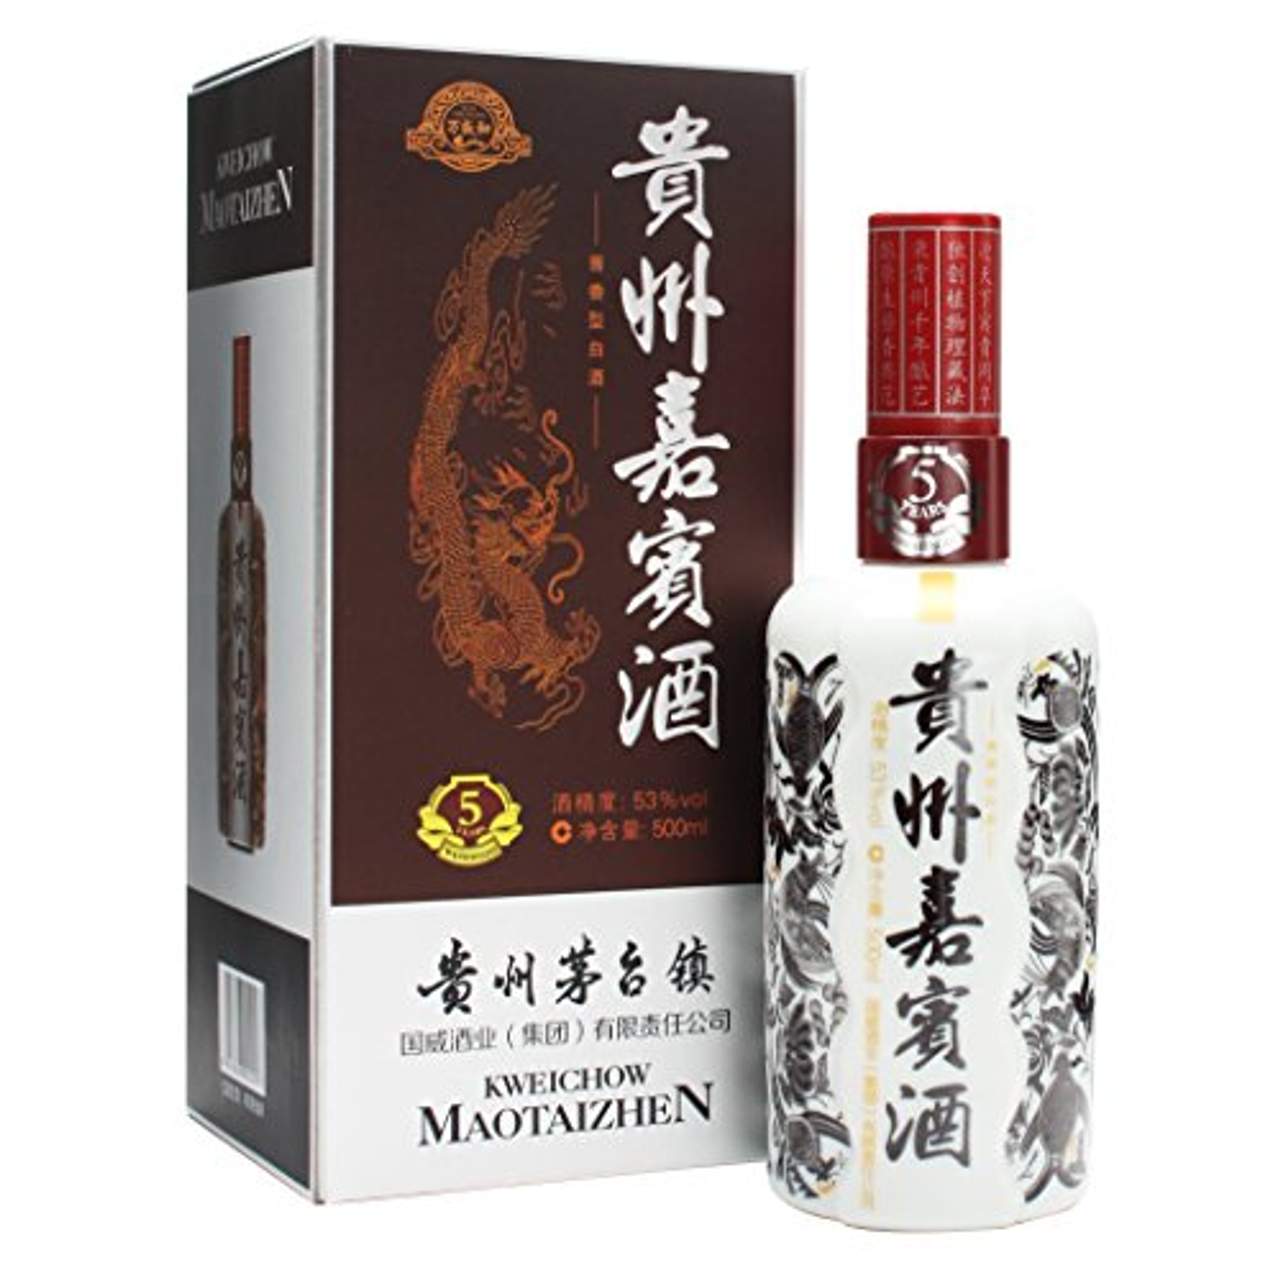 Kweichow Moutai Maotaizhen 5 Jahre 0,5 Liter 53% Vol